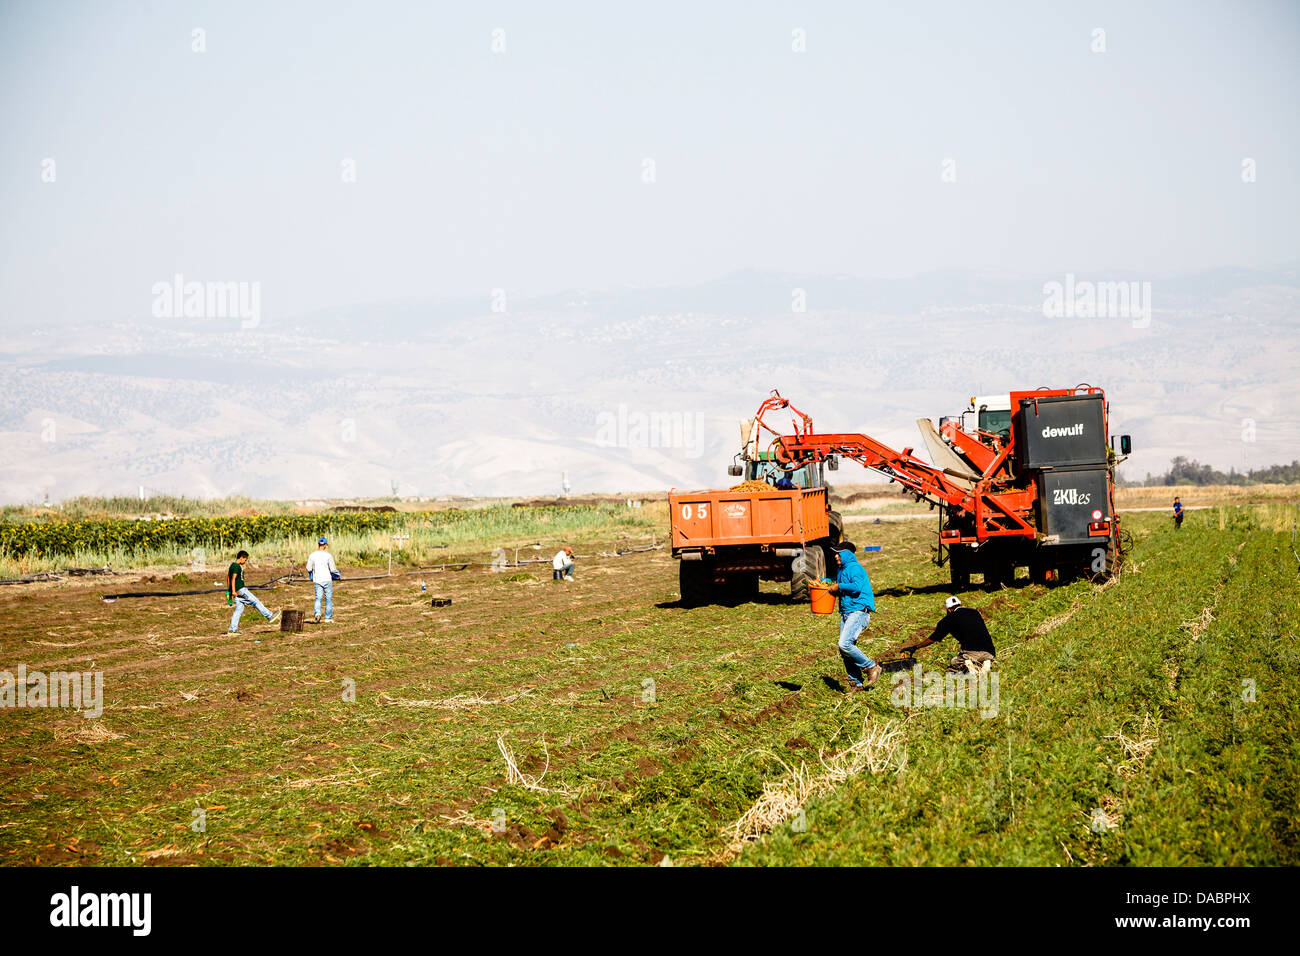 La culture de la carotte, de la vallée de Beit Shean, Israël, Moyen Orient Banque D'Images